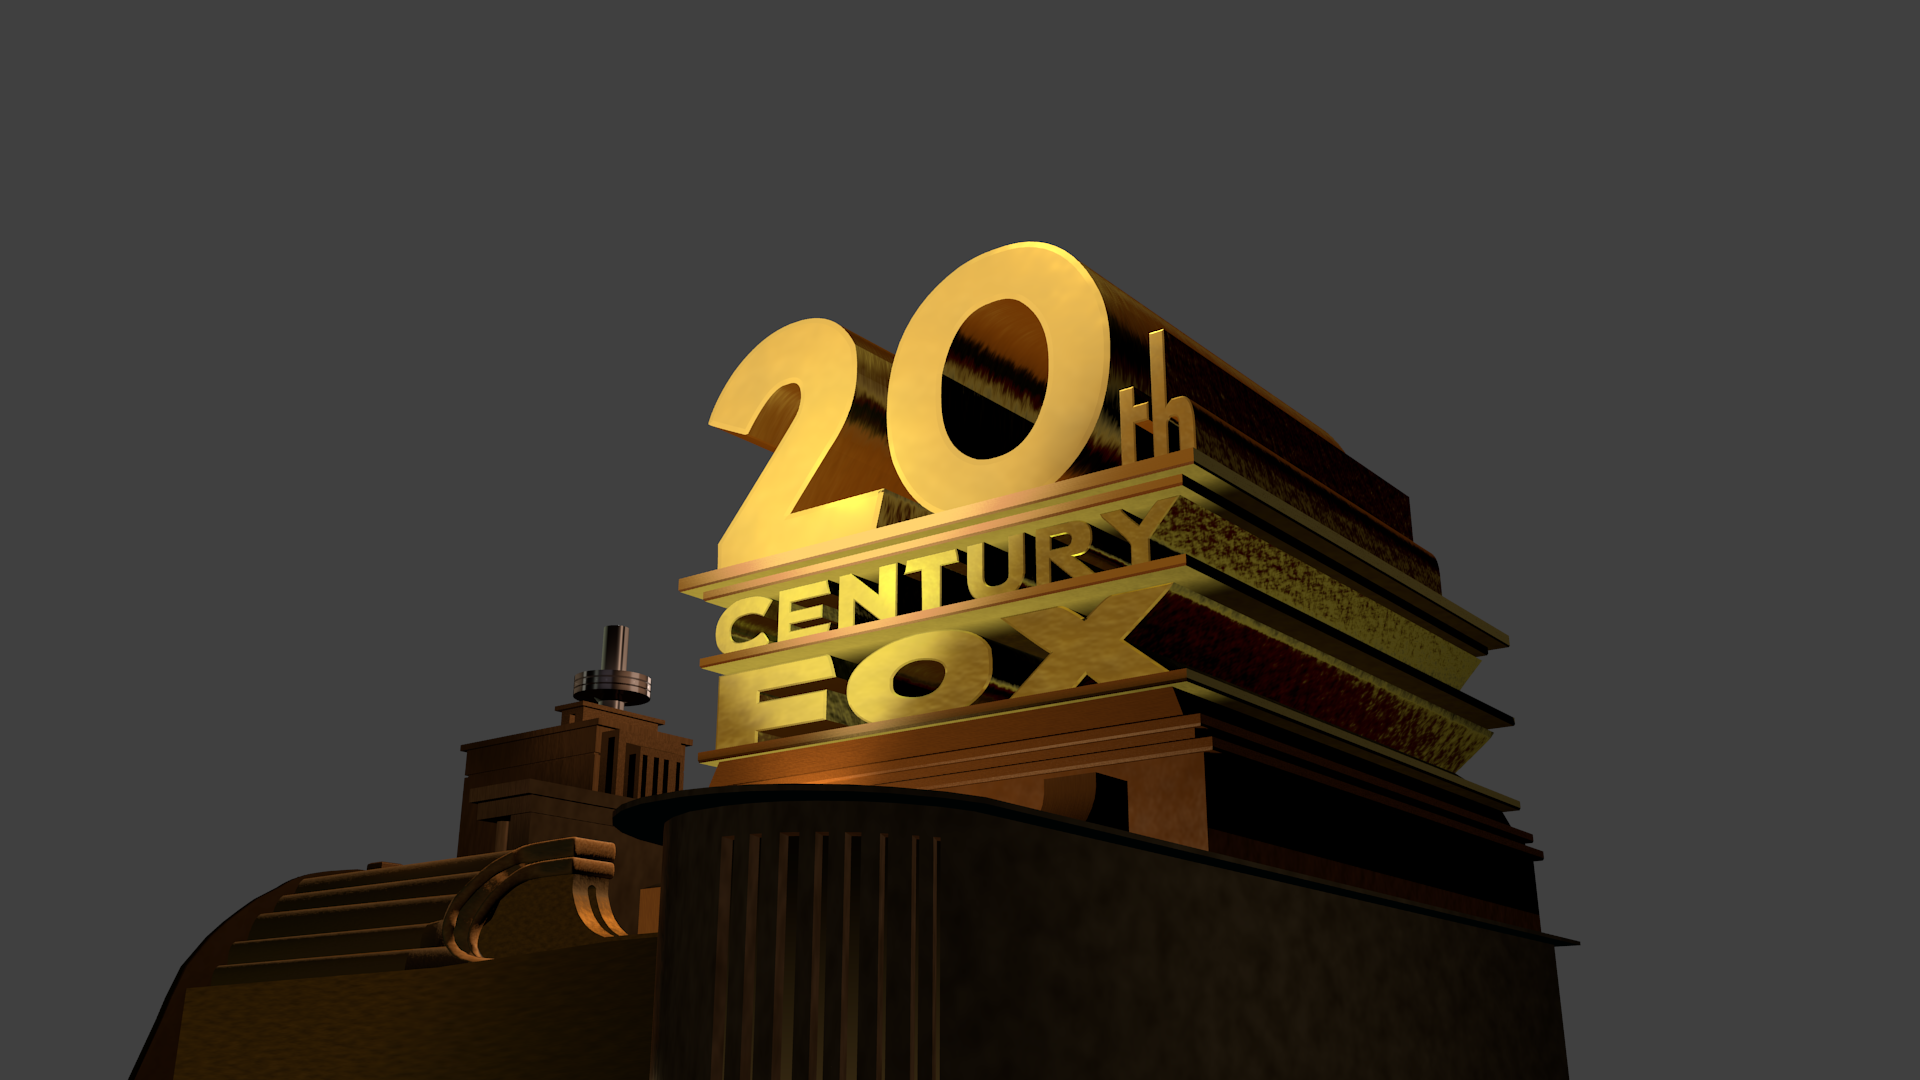 20ht Century Fox. 20 Век Фокс логотип. Century Fox 20th зажигалка. 20 Й век сенчури Фокс представляет. 20 th century